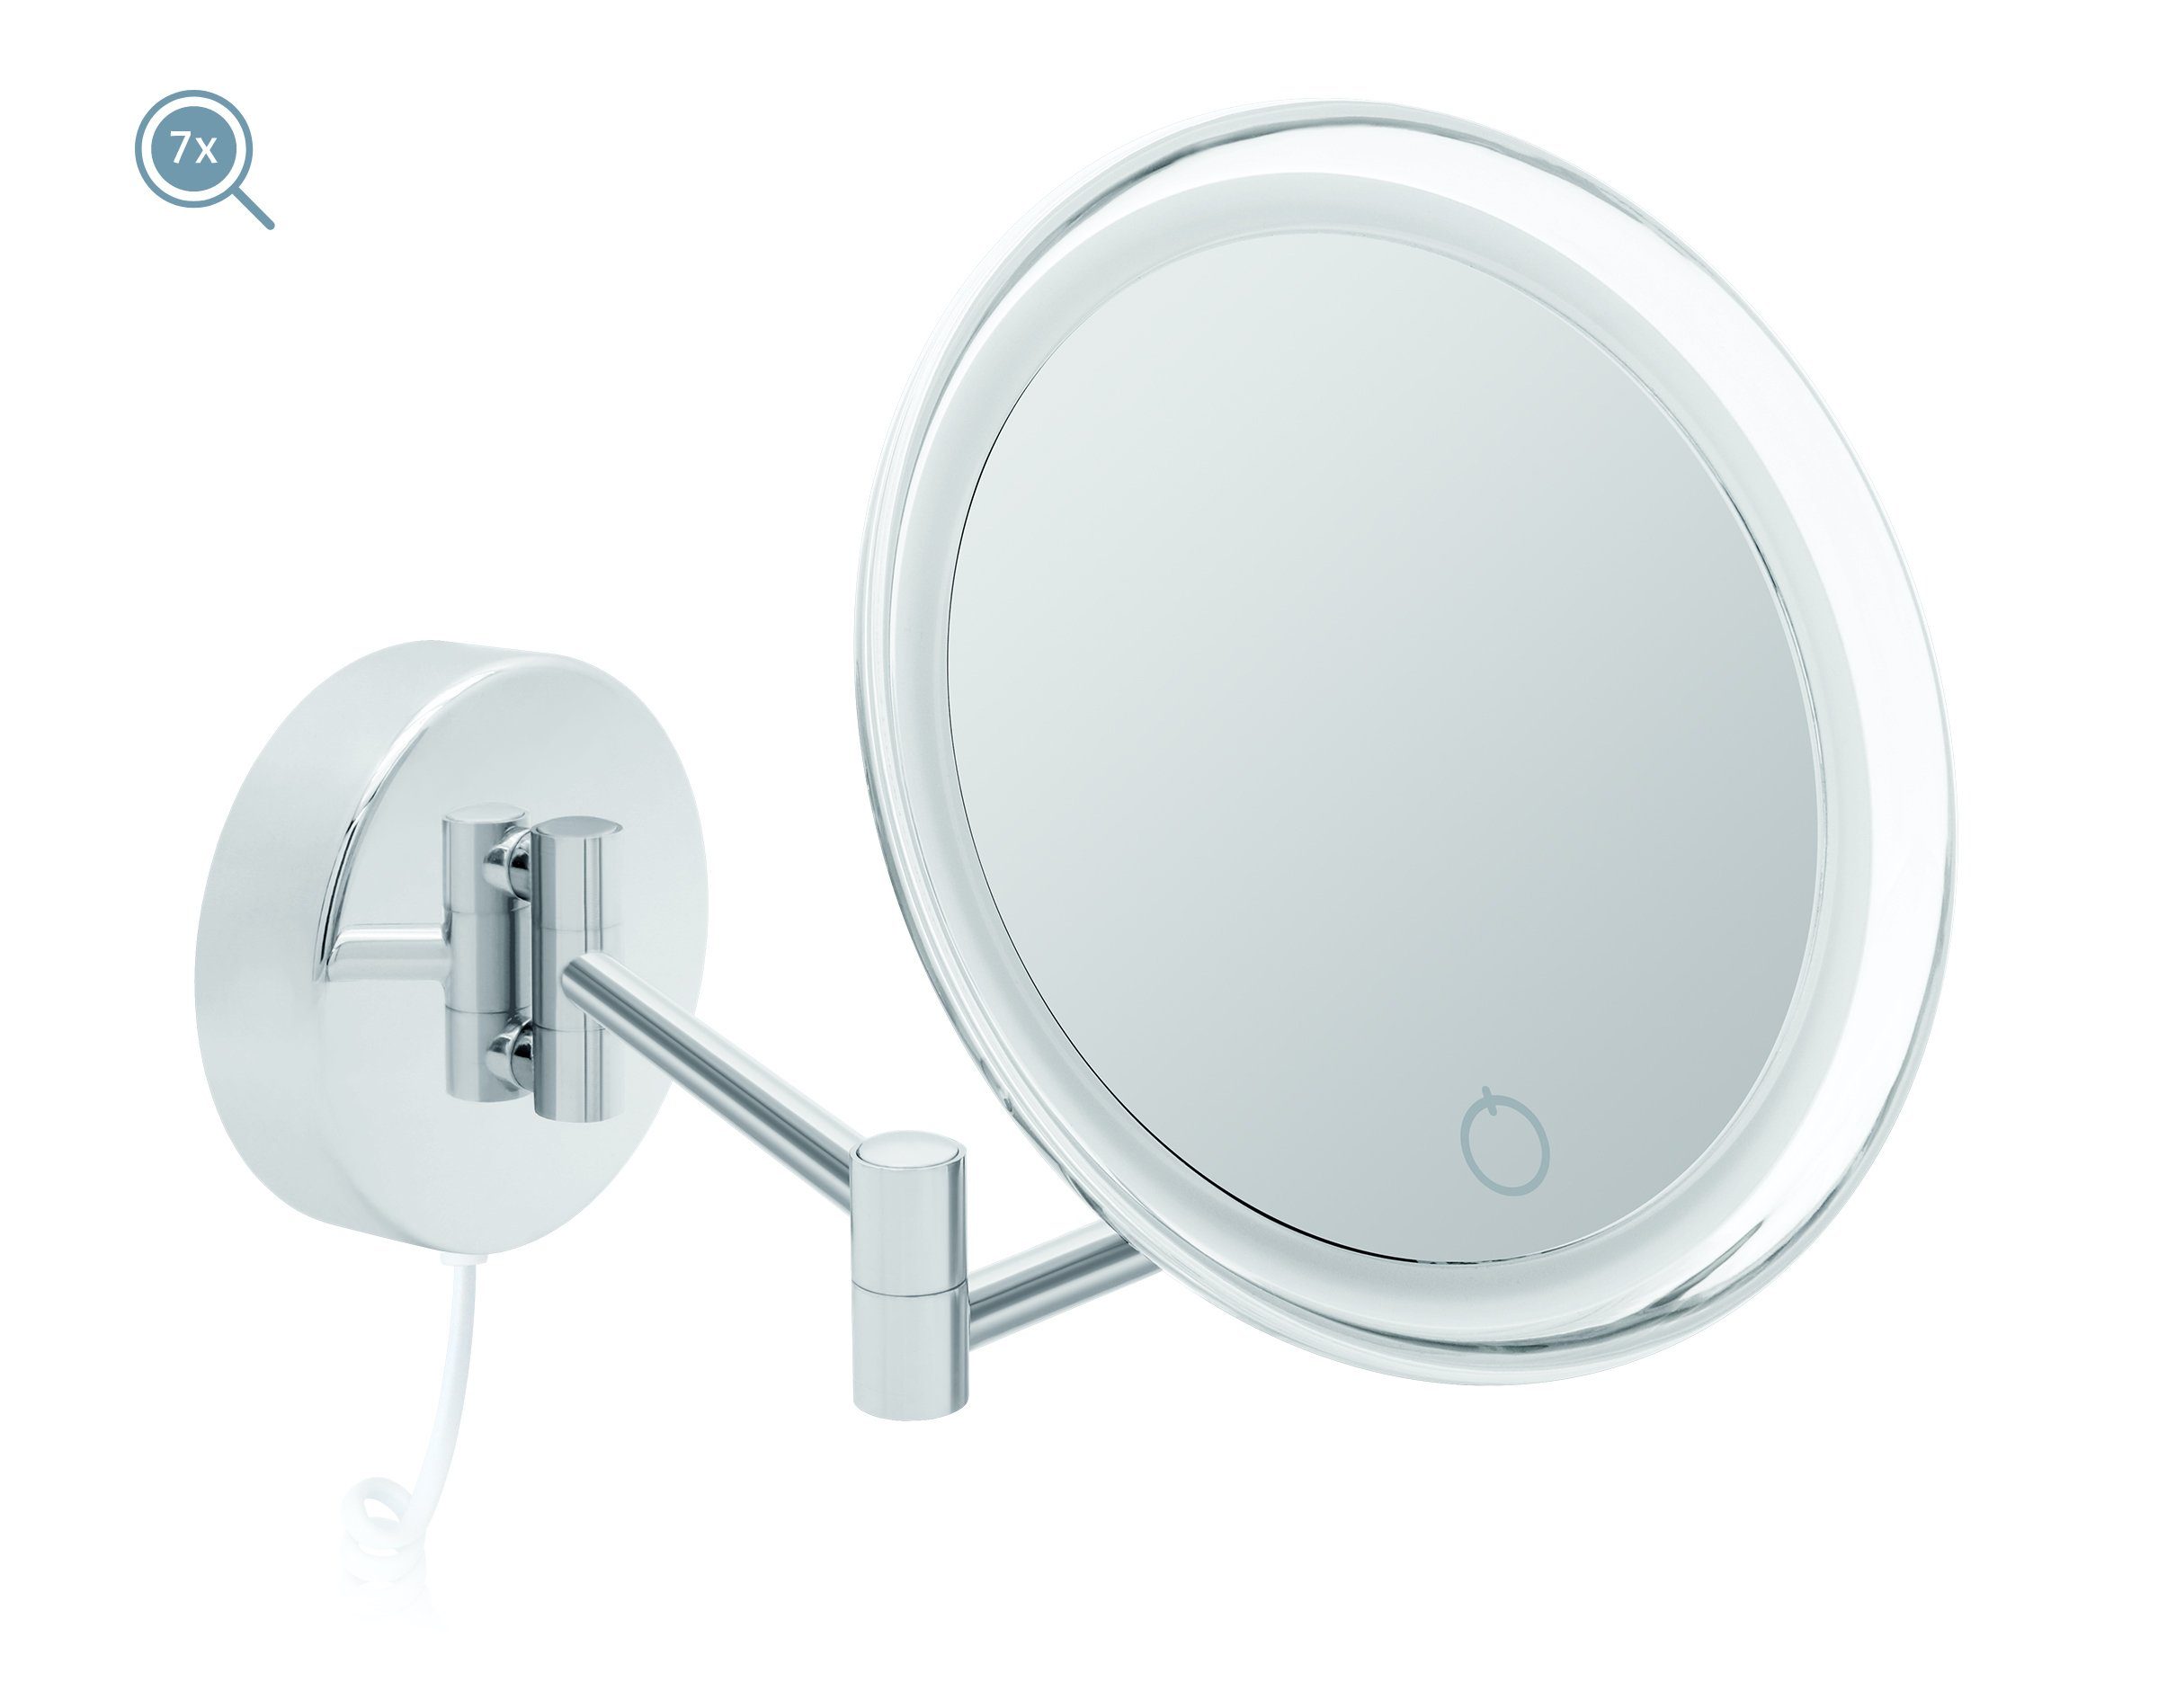 Kosmetikspiegel mit 7fach weißem Kabel Kosmetikspiegel LED Dimmerfunktion Auto-off Siena, Libaro